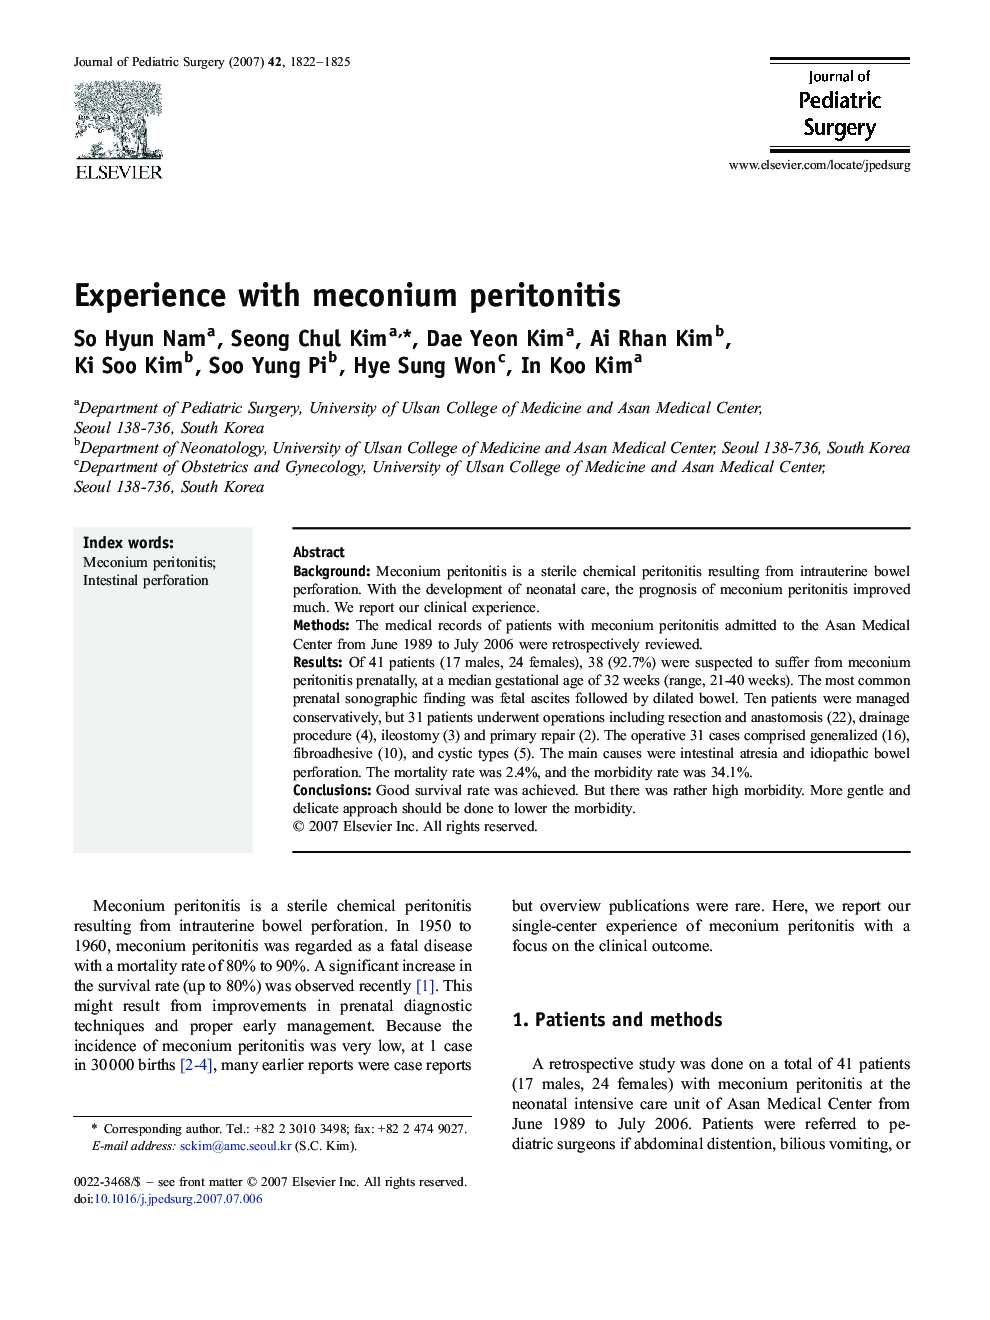 Experience with meconium peritonitis